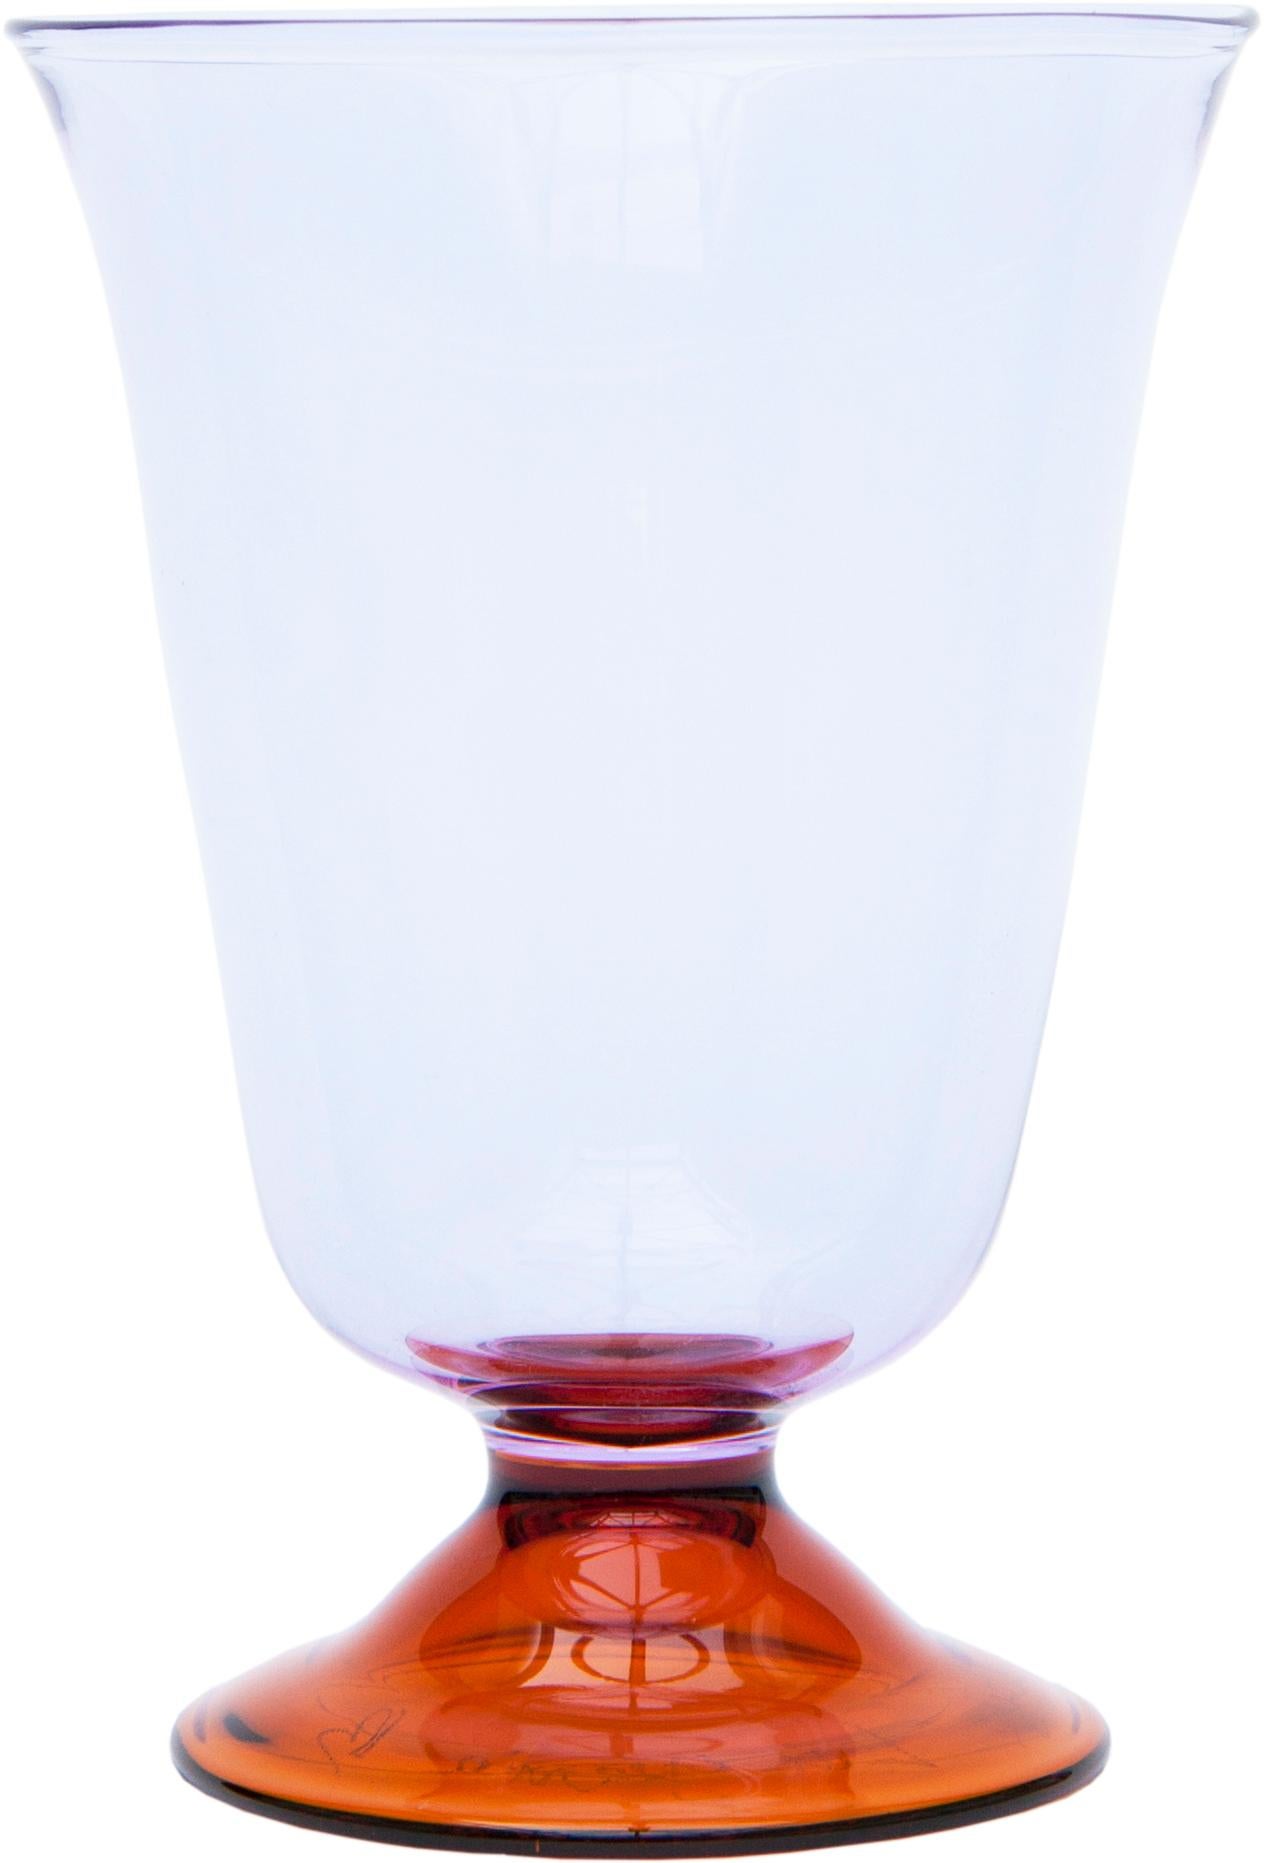 Campbell-Rey lance deux nouvelles collections de verres de Murano soufflés à la main et fabriqués en Pyrex. Baptisées Cosimo et Cosima, ces deux collections s'inscrivent dans la continuité de la relation étroite entre Campbell-Rey et le verrier